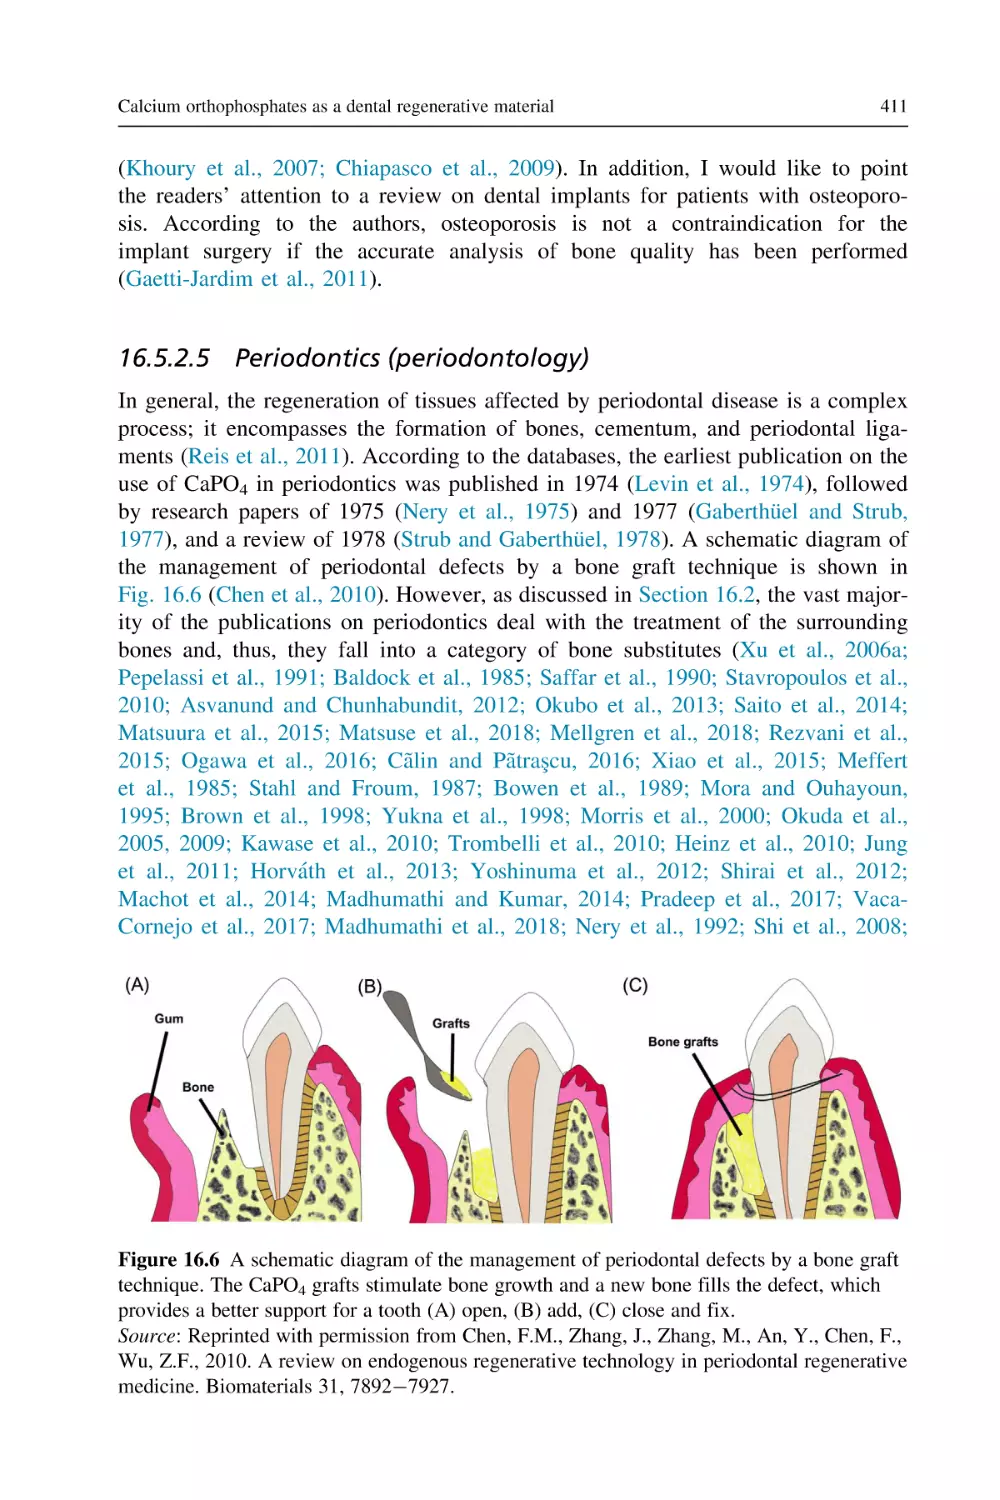 16.5.2.5 Periodontics (periodontology)